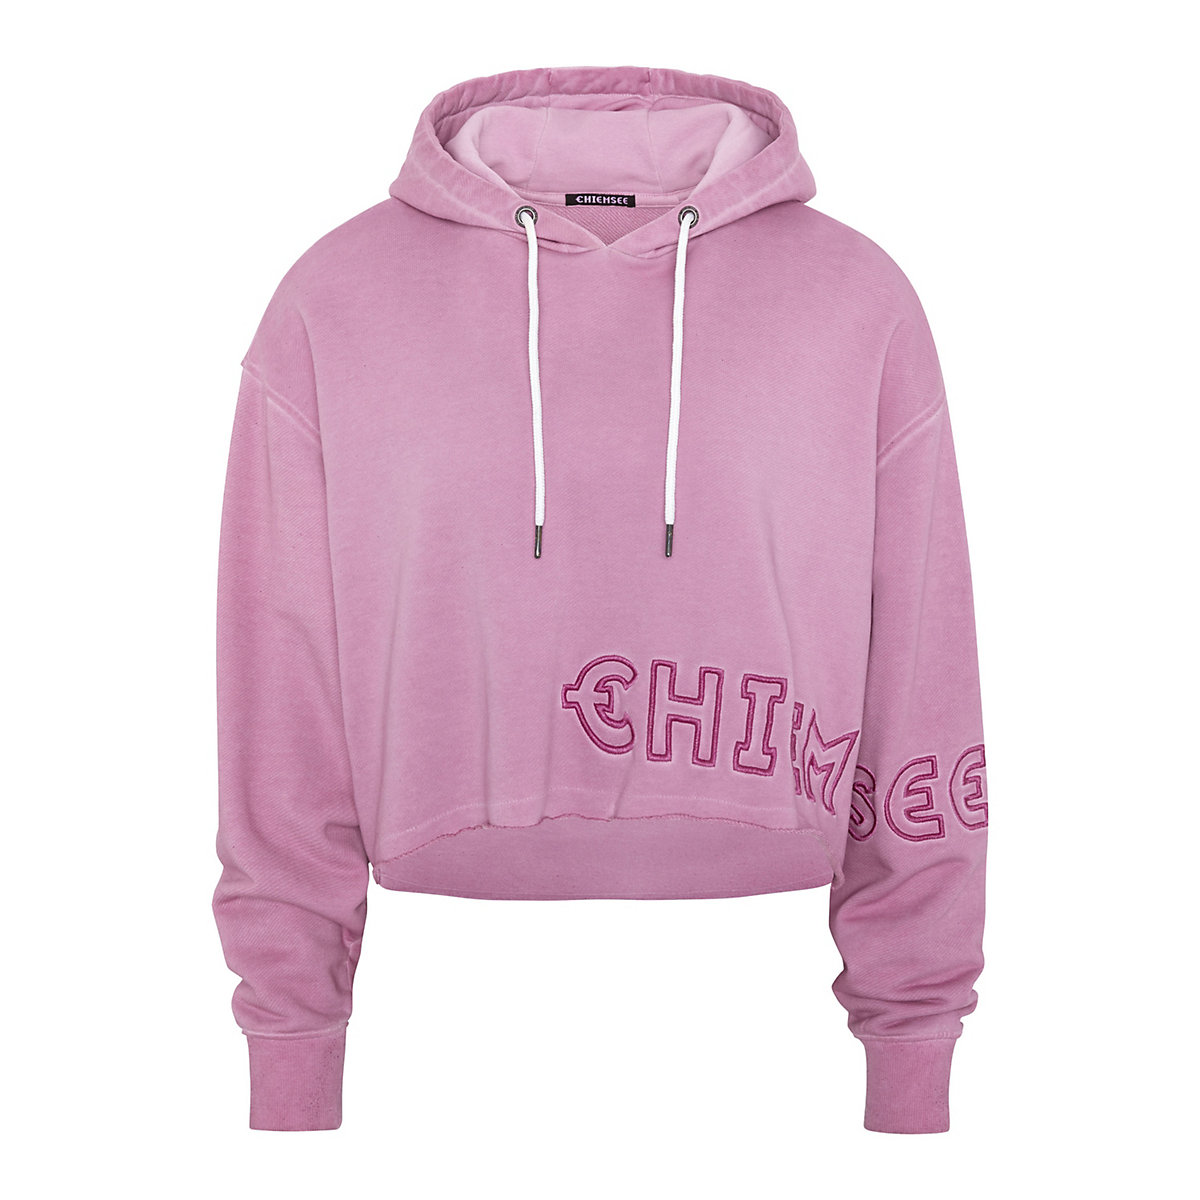 CHIEMSEE Sweatshirt mit Kapuze Kapuzenpullover pink